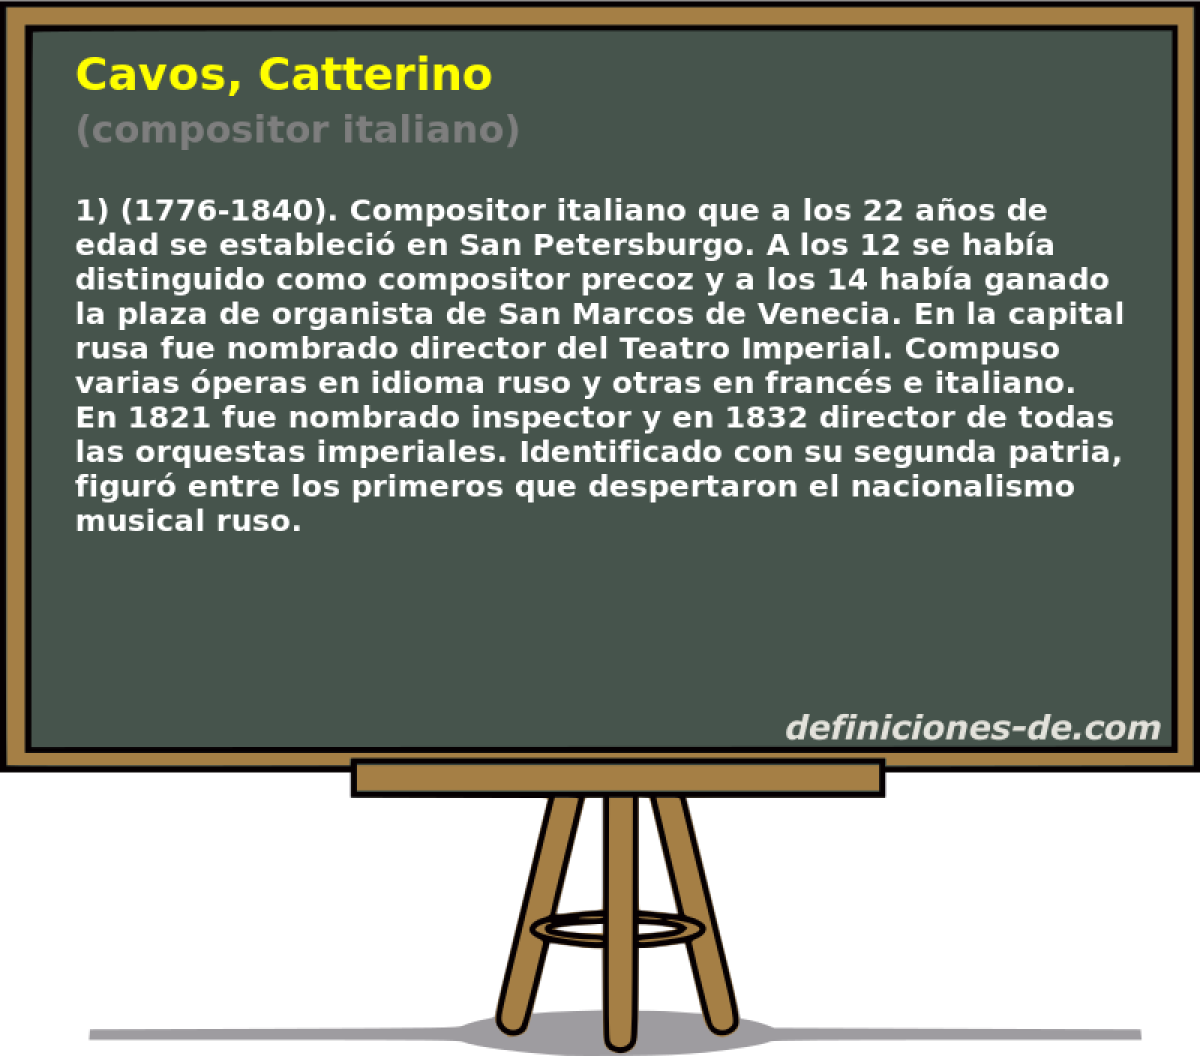 Cavos, Catterino (compositor italiano)